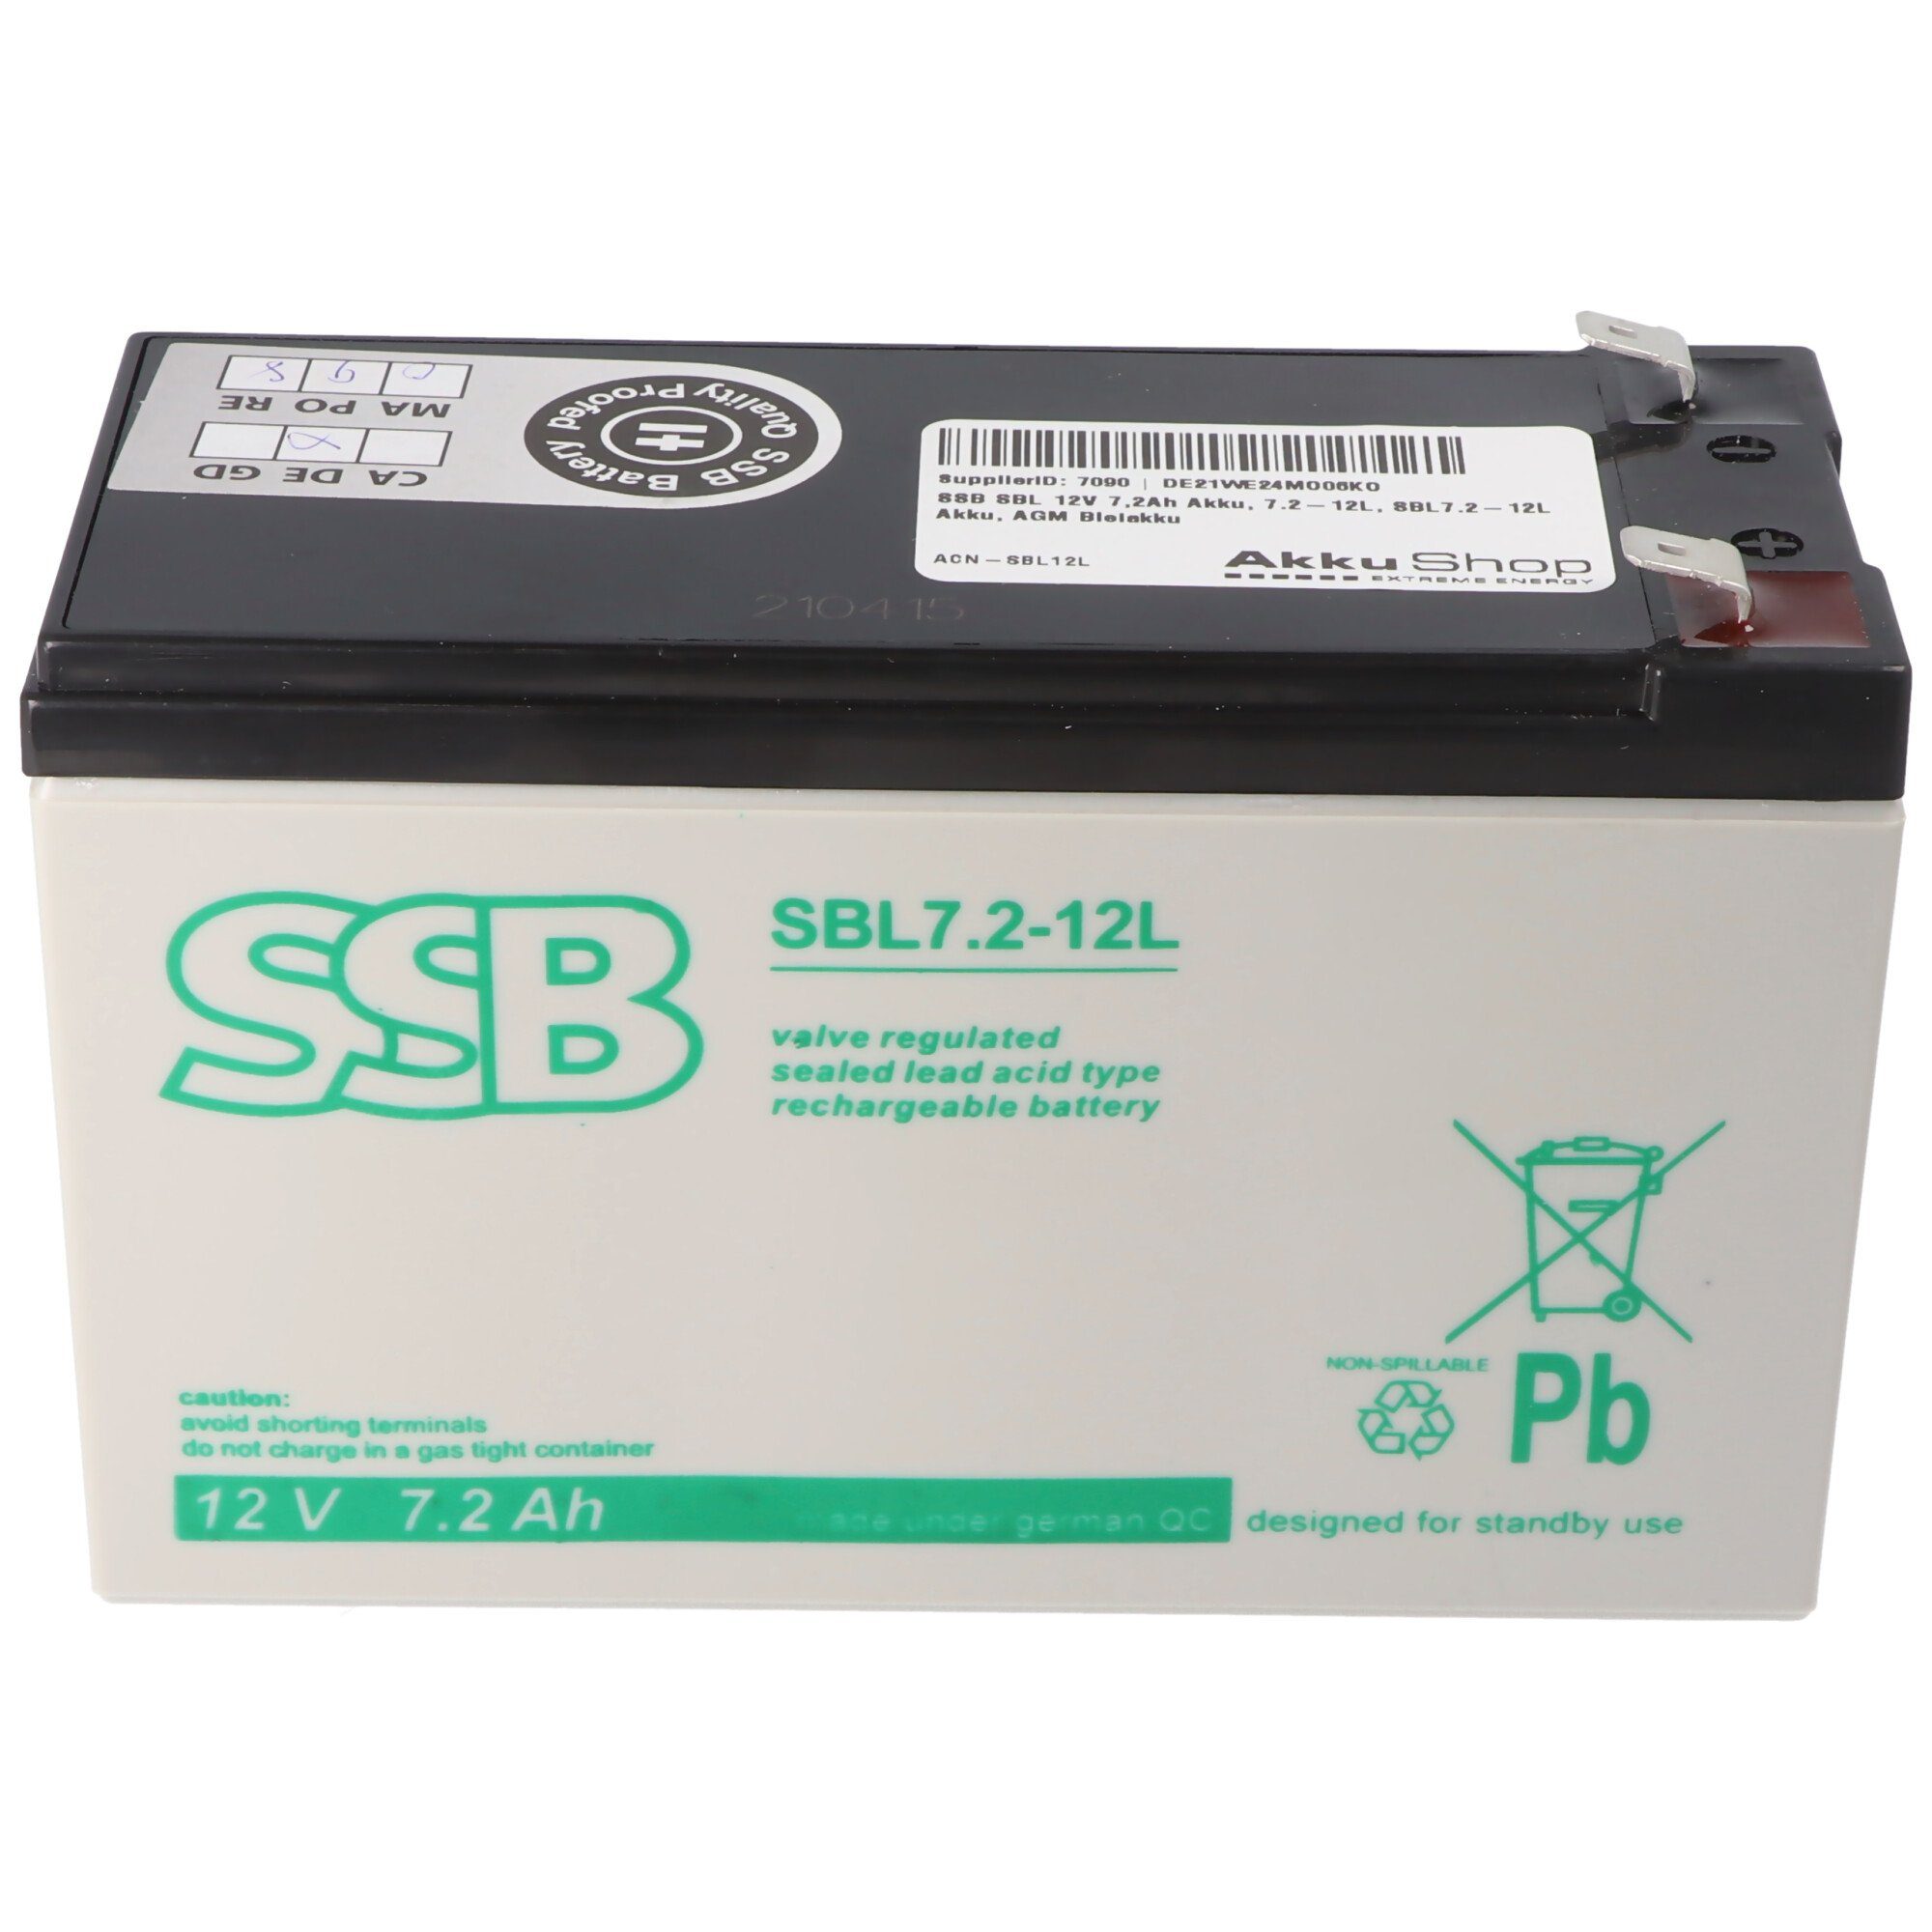 SSB Battery SSB SBL 12V 7,2Ah Akku, 7.2-12L, SBL7.2-12L Akku, AGM Bleiakku Akku